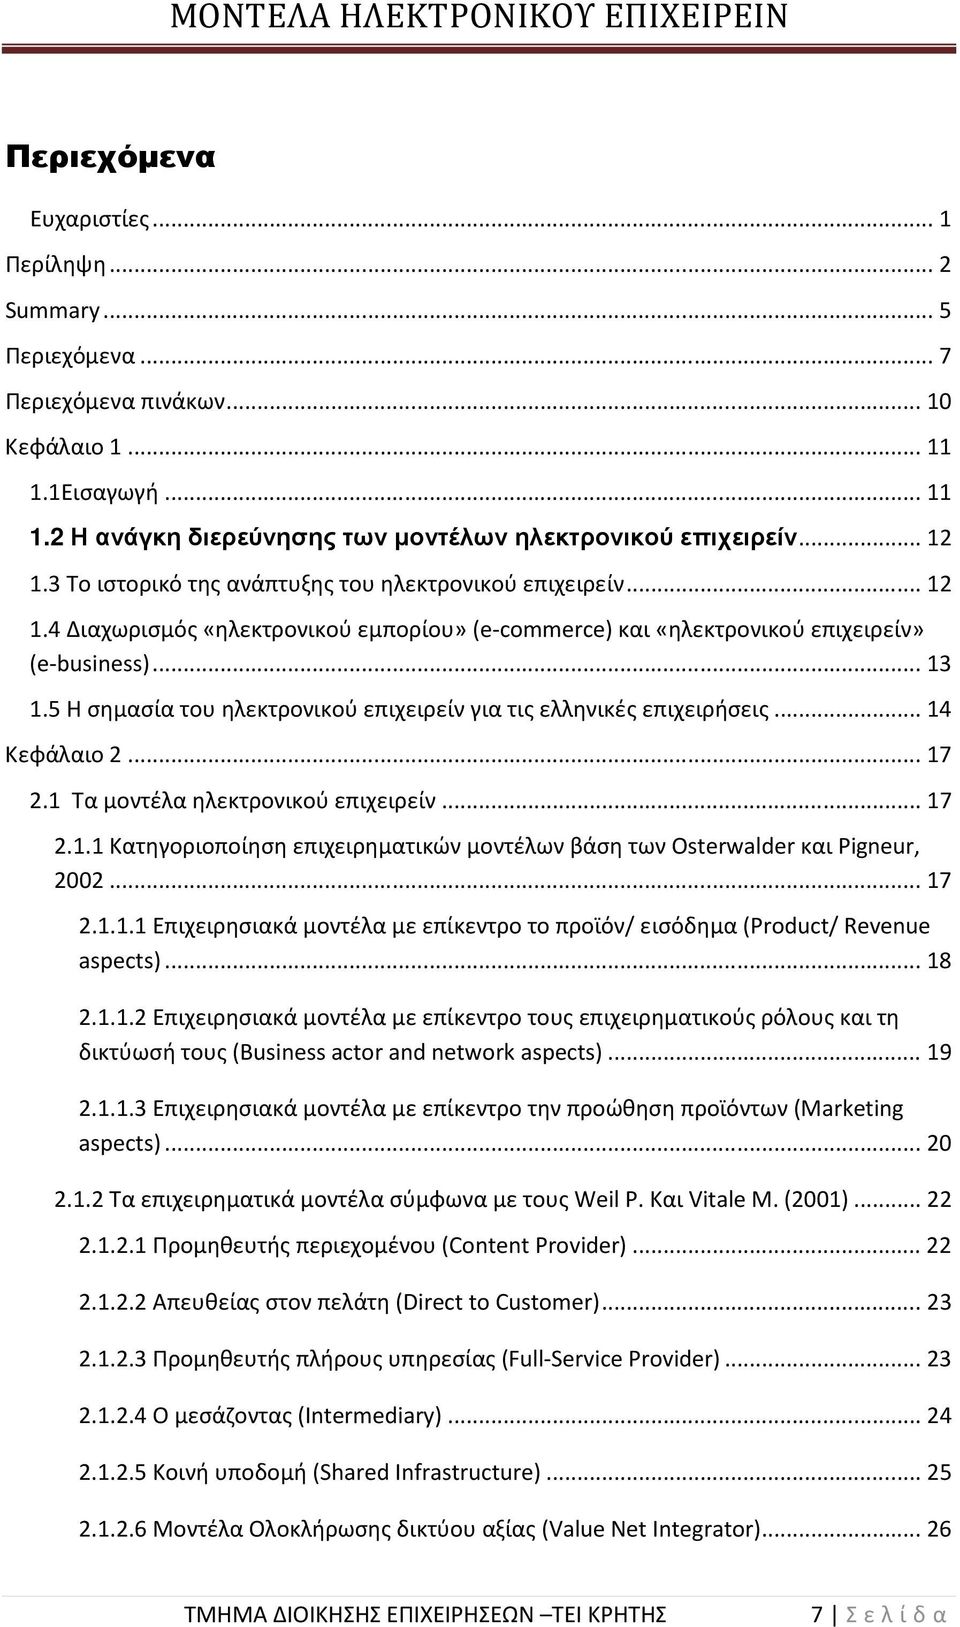 5 Η σημασία του ηλεκτρονικού επιχειρείν για τις ελληνικές επιχειρήσεις... 14 Κεφάλαιο 2... 17 2.1 Τα μοντέλα ηλεκτρονικού επιχειρείν... 17 2.1.1 Κατηγοριοποίηση επιχειρηματικών μοντέλων βάση των Osterwalder και Pigneur, 2002.